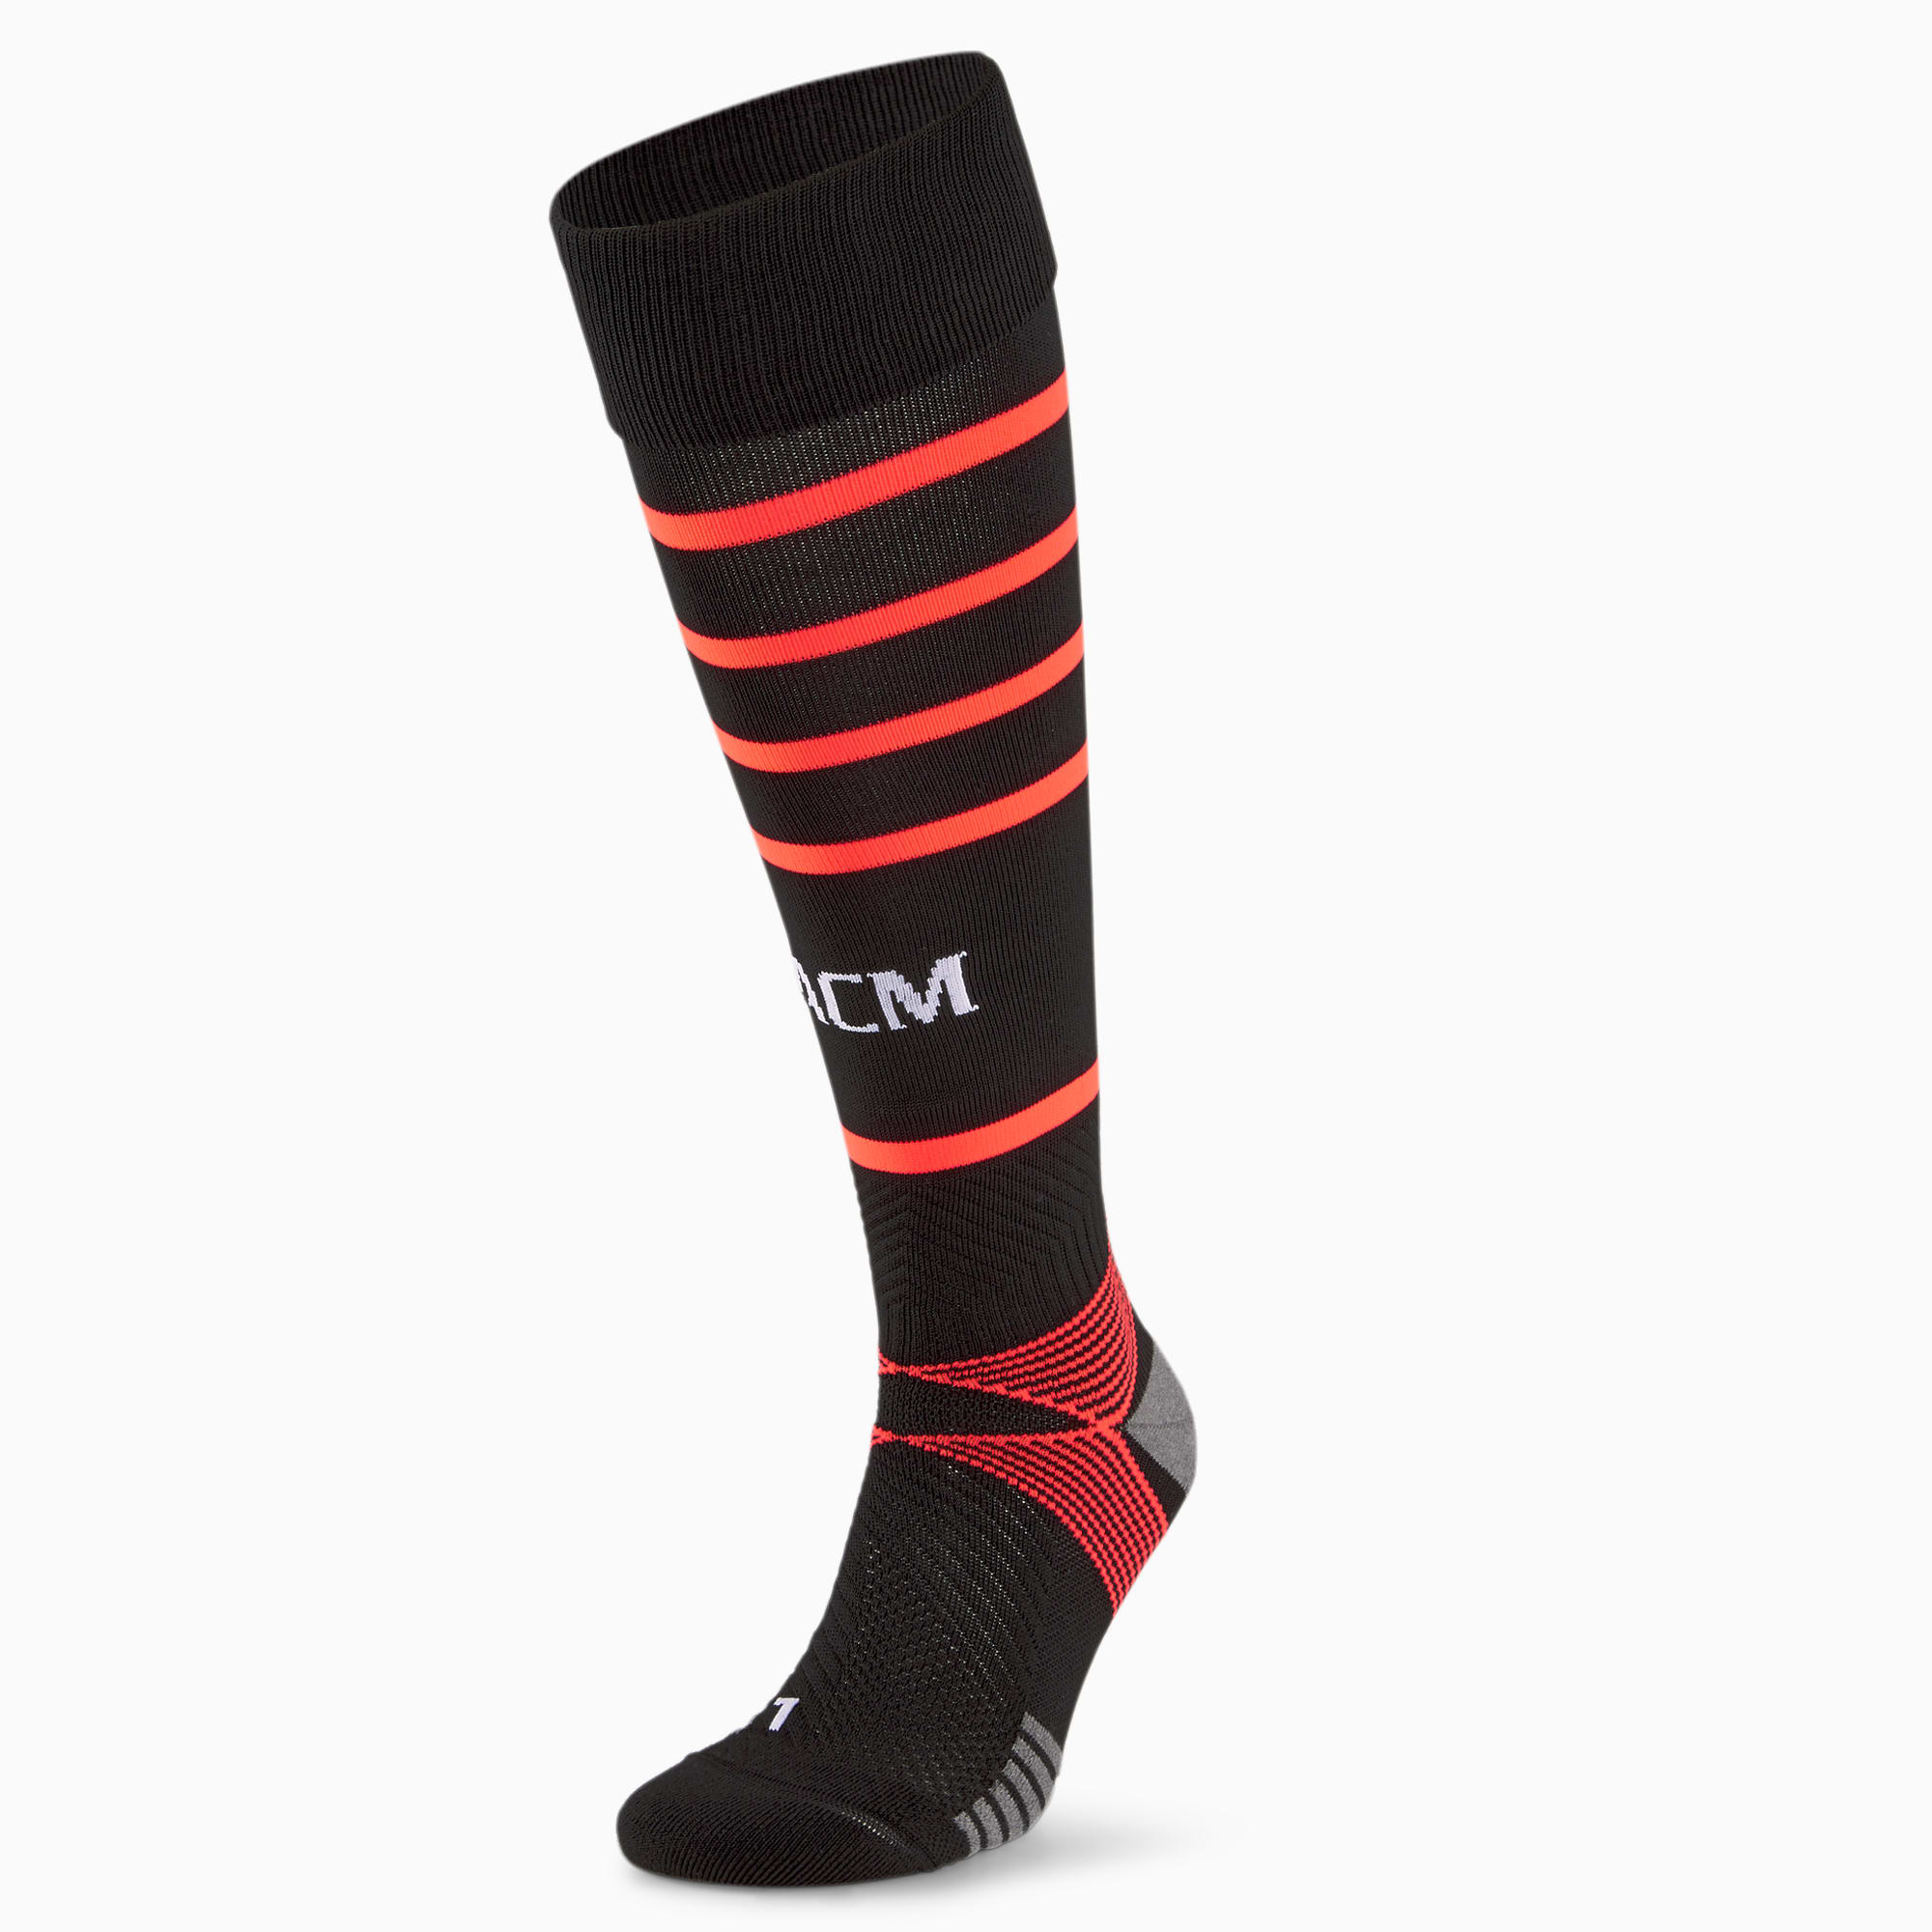 PUMA Chaussettes de football a rayures horizontales ACM Replica homme, Noir/Rouge, Taille 35-38, Vetements